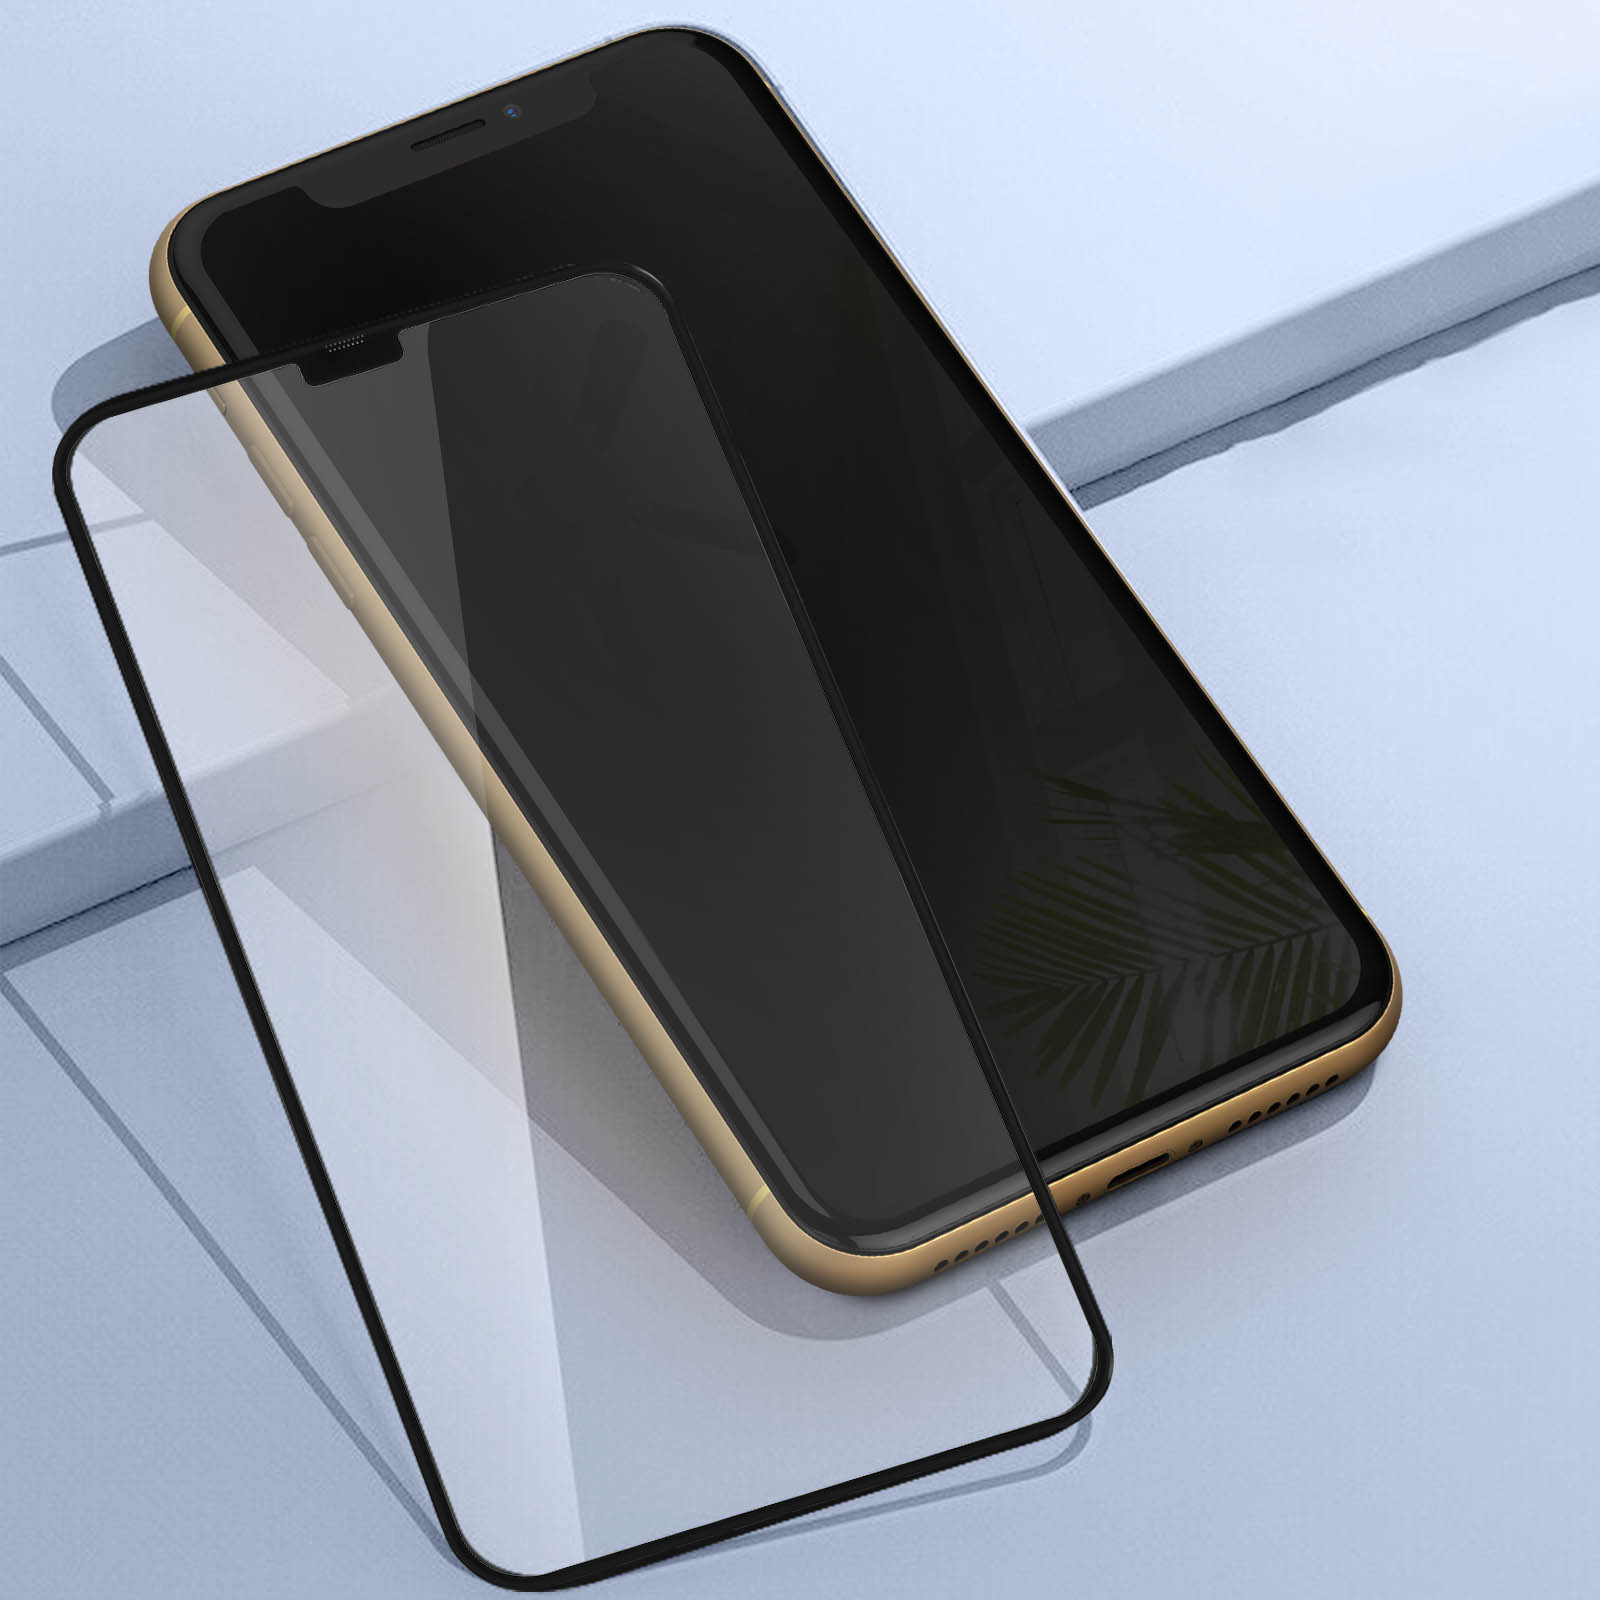 Verre Trempé iPhone 11 et iPhone XR, Adhésion Totale Full Glue 5D